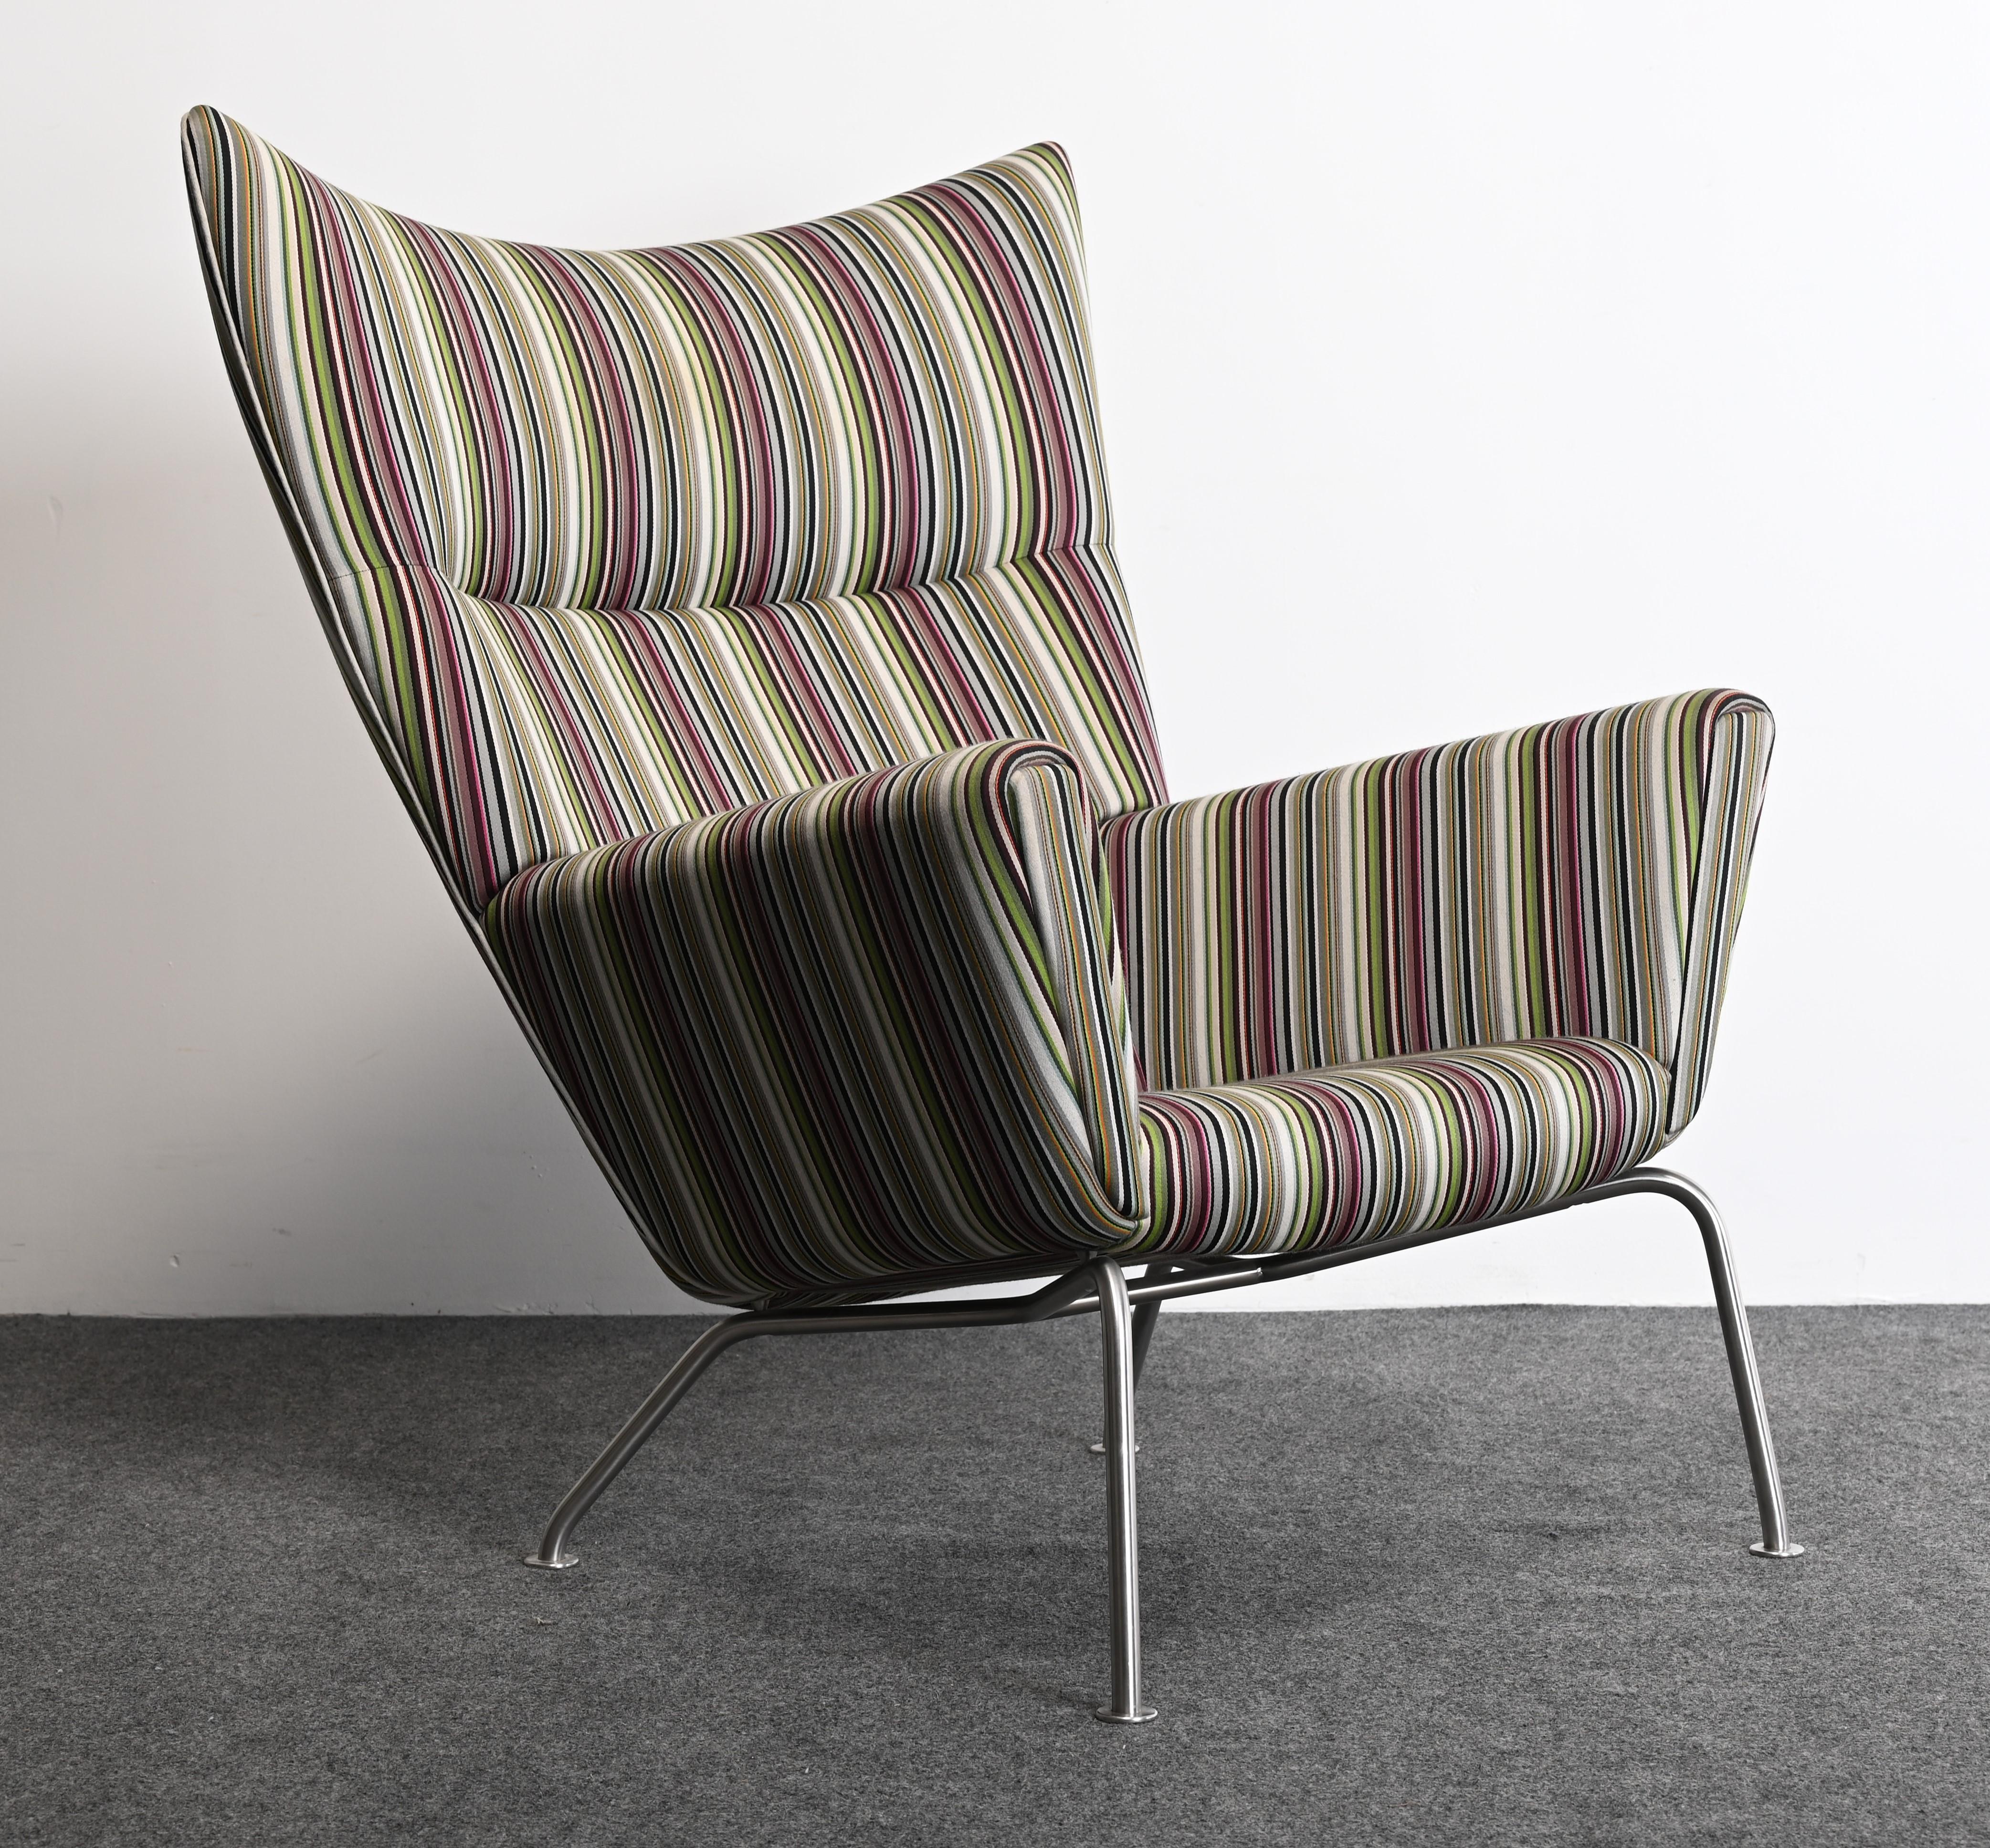 Un classique du design, la chaise longue à oreilles CIRCA, conçue par Hans Wegner en 1960 pour Carl Hansen & Son, circa 2006. Cette chaise n'a jamais été produite en série jusqu'à récemment. La chaise longue CH445 Wing Lounge a été nominée pour le